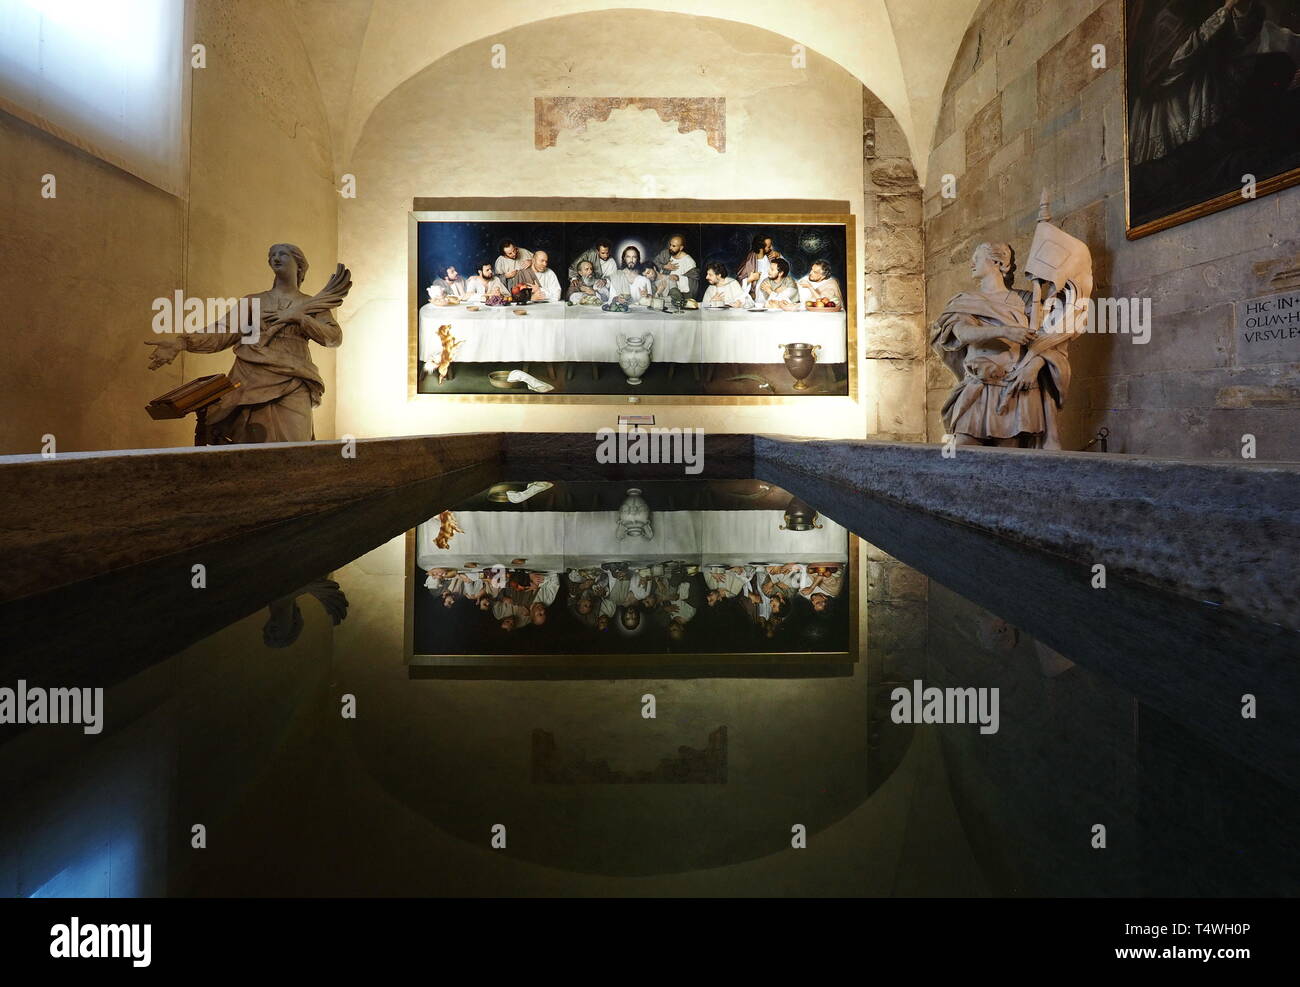 PIACENZA 25 Avril 2018 : Ultima cena par Ulisse exposés SARTINI à Plaisance Dome dans la chapelle de la Madonna del popolo. Piacenza, Italie. Banque D'Images